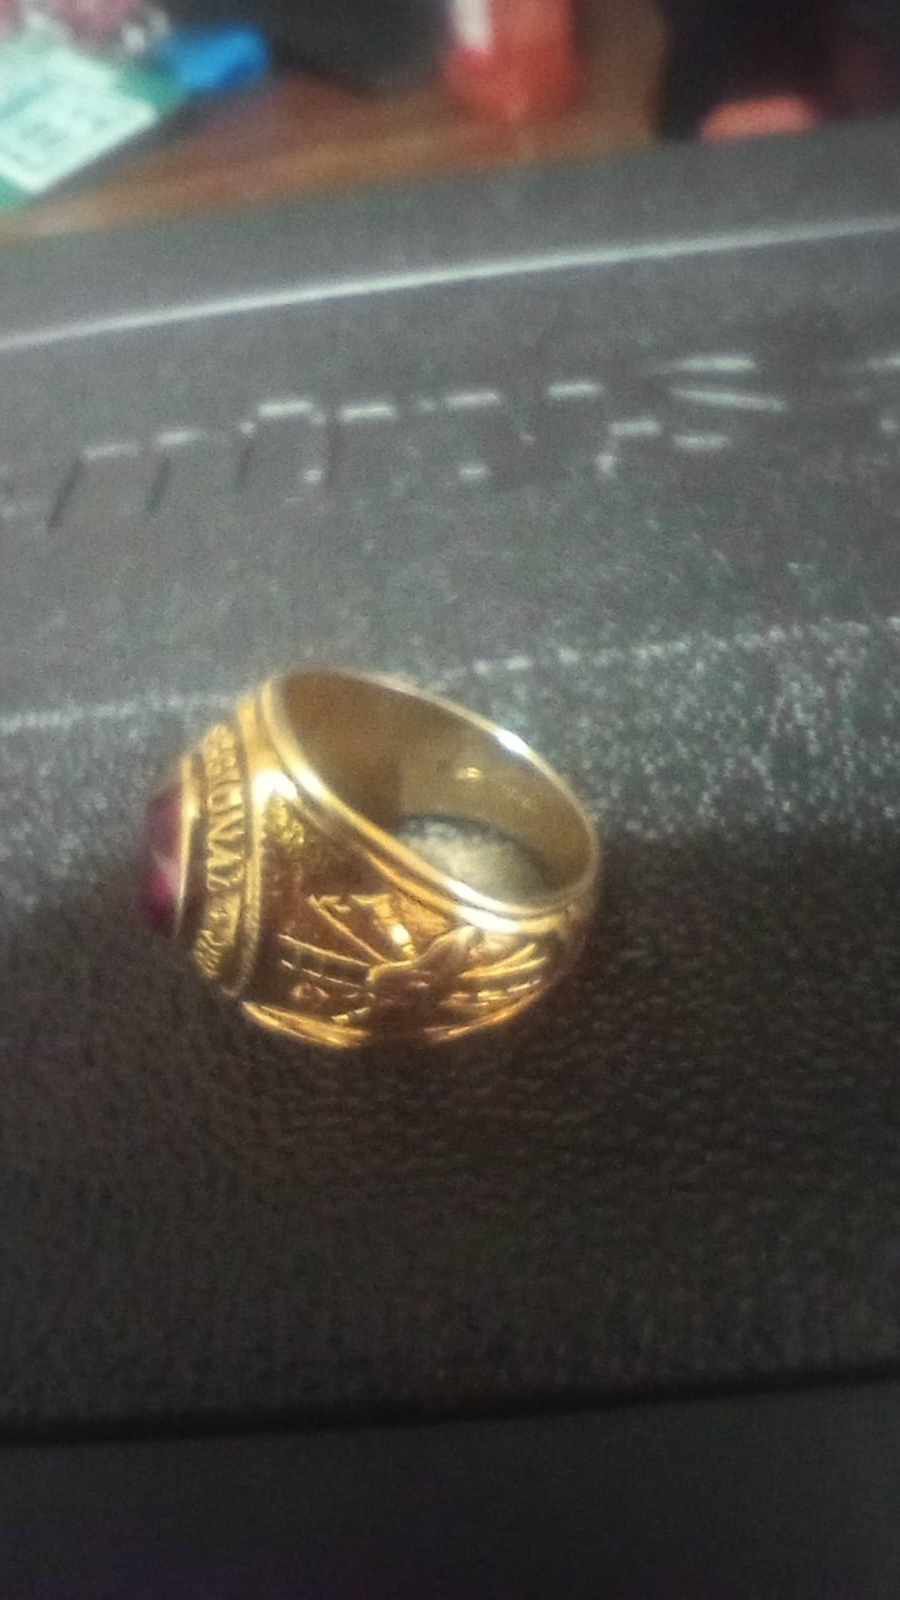 14 K Vitange Firefighter Ring 